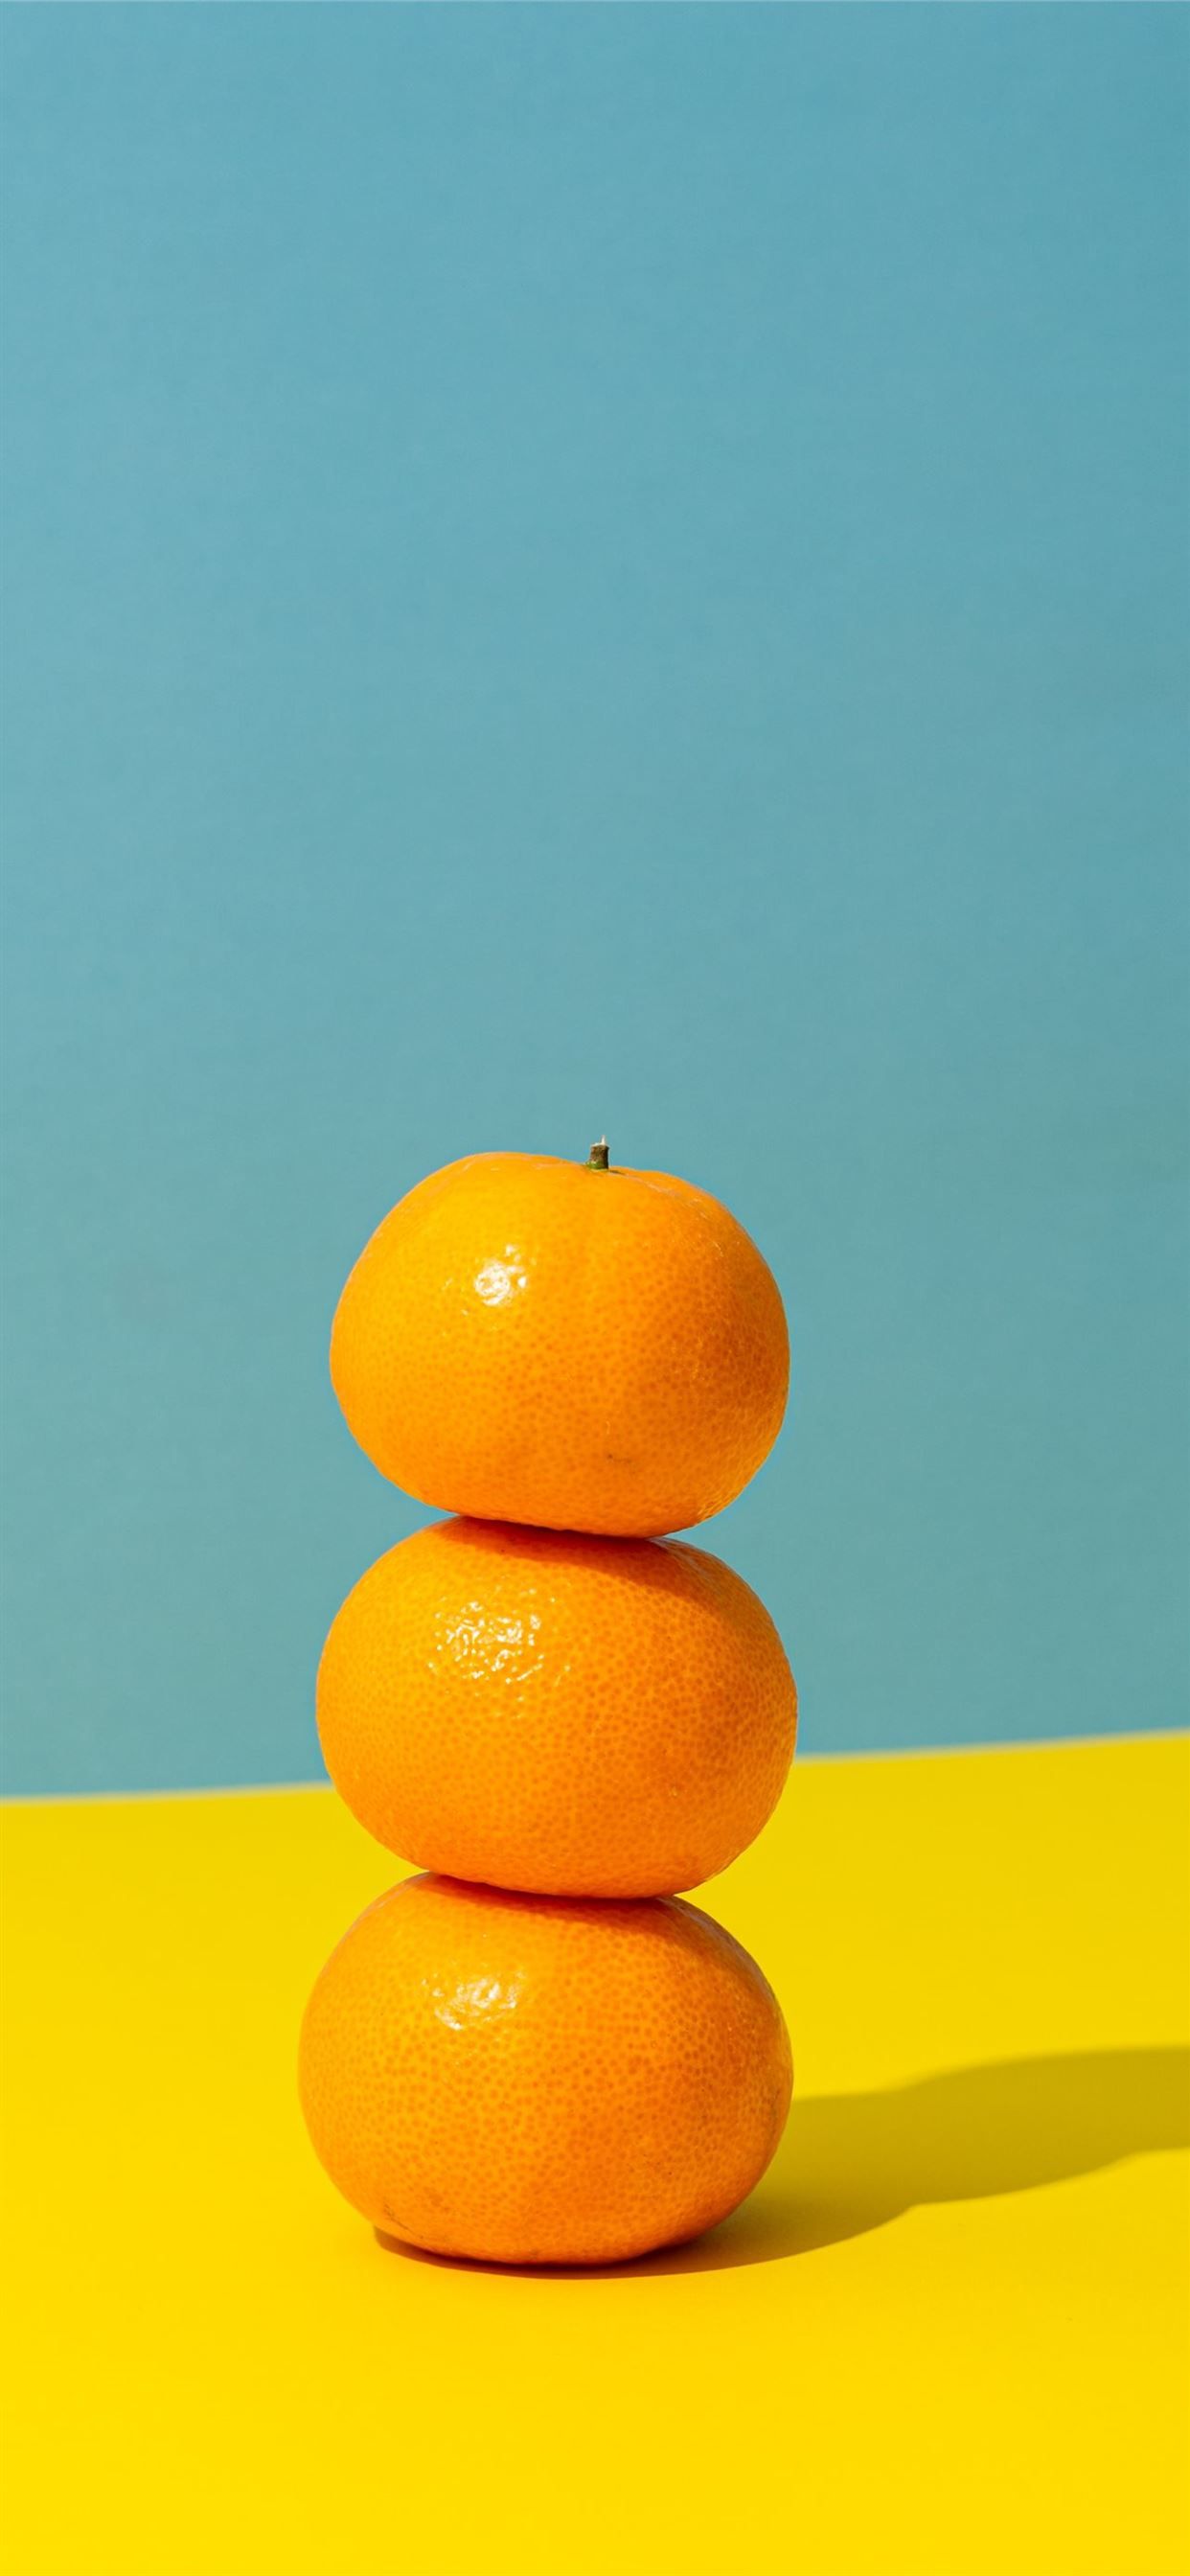 orange fruit on yellow surface iPhone 11 Wallpaper Free Download